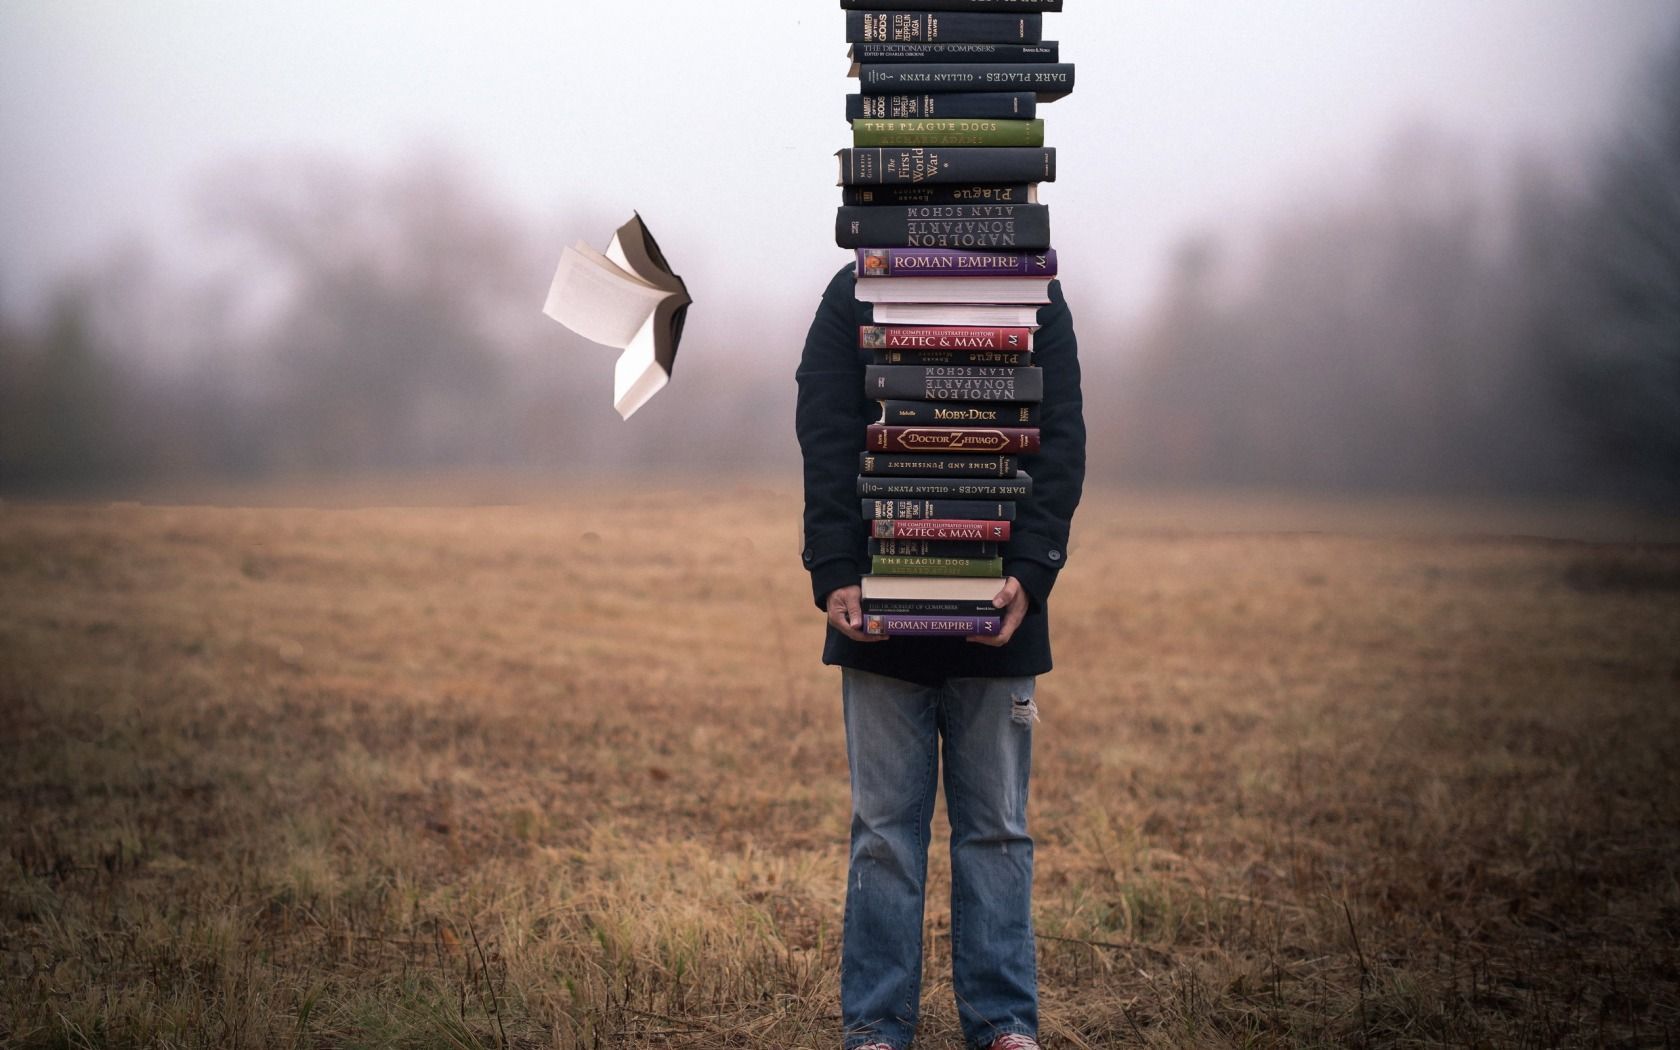 I libri più venduti a gennaio 2015: in cima alla classifica c’è Umberto Eco